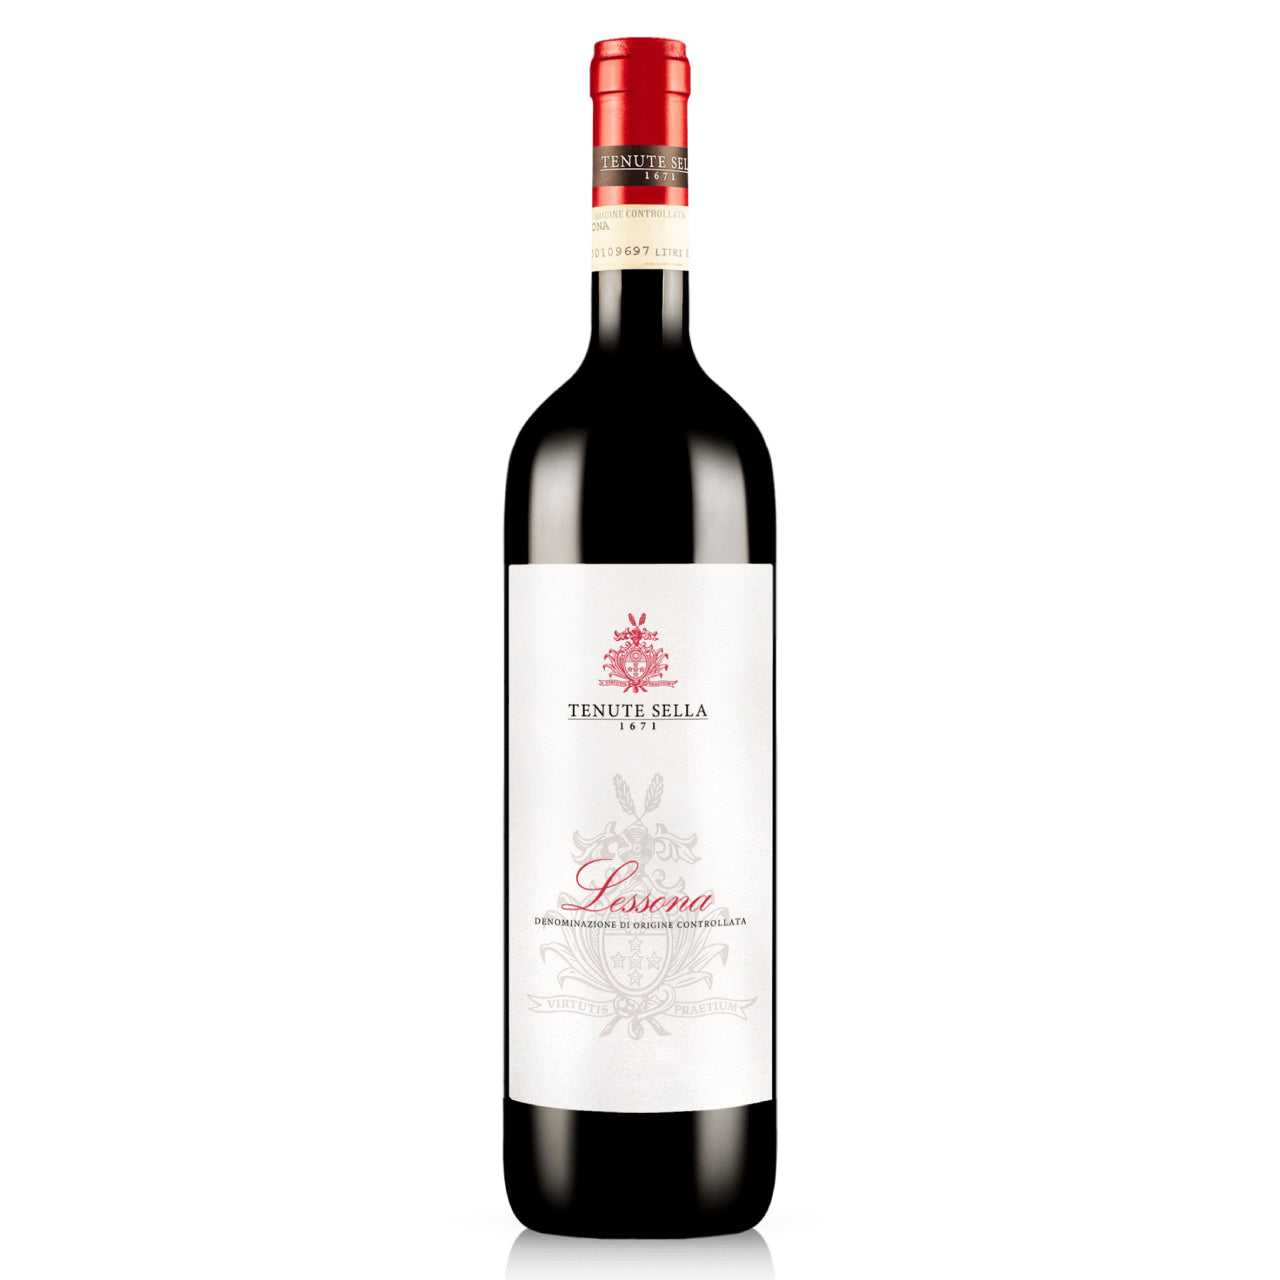 Tenuta Sella Lessona 2011 - Wine Italy Red - Liquor Wine Cave